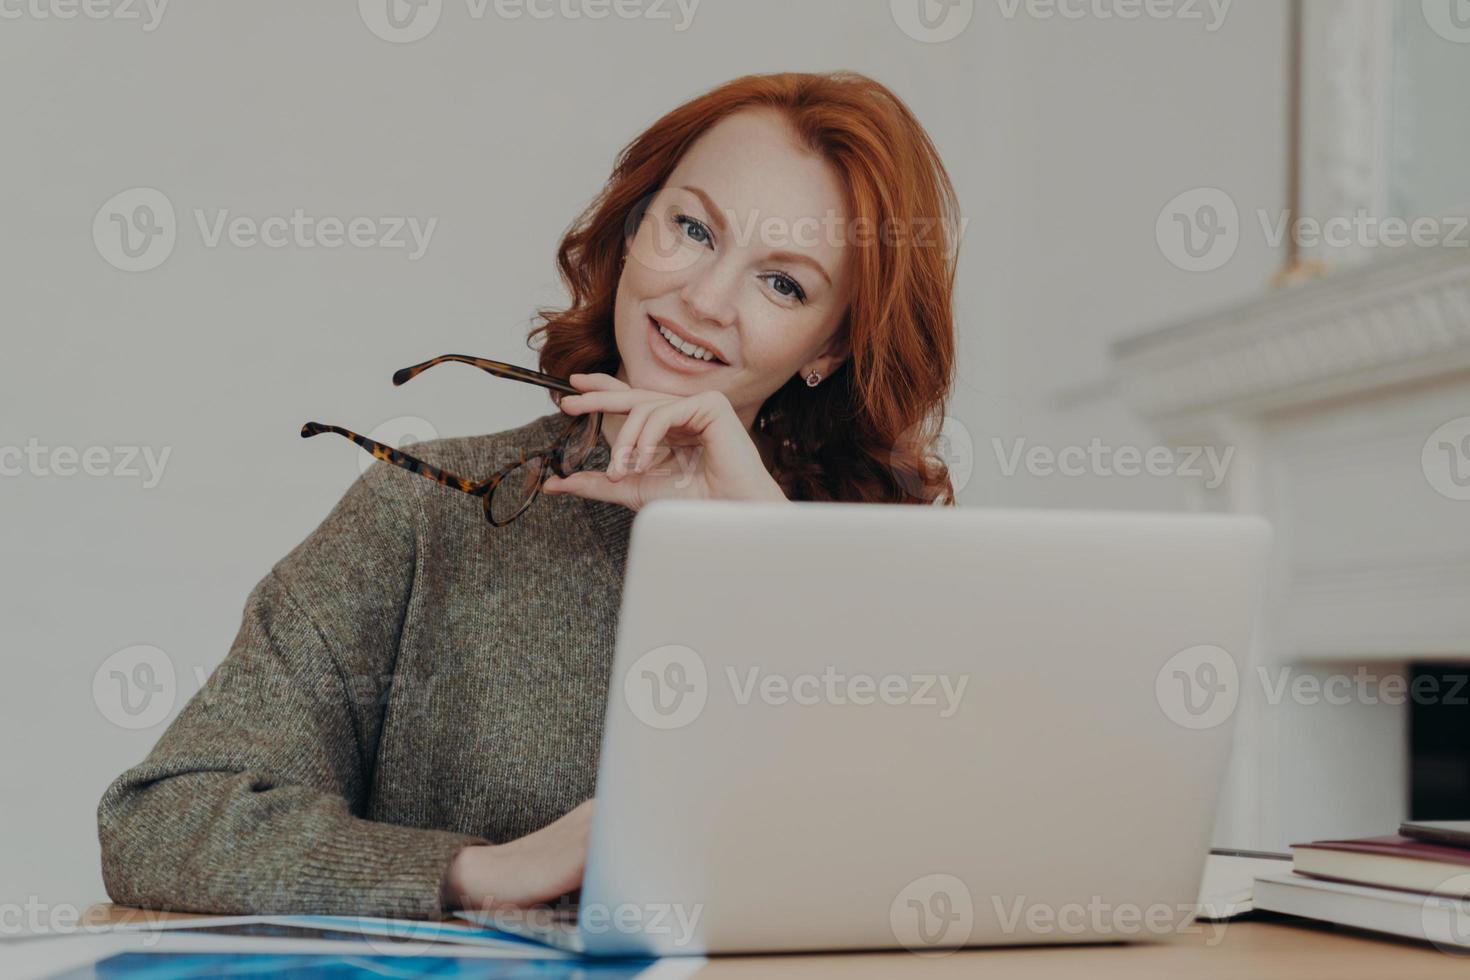 foto av glad rödhårig kvinnlig student gör forskning för läxor, sitter på coworking utrymme i studierummet, arbetar på bärbar dator, använder internet. frilansande webbdesigner skapar design för klient